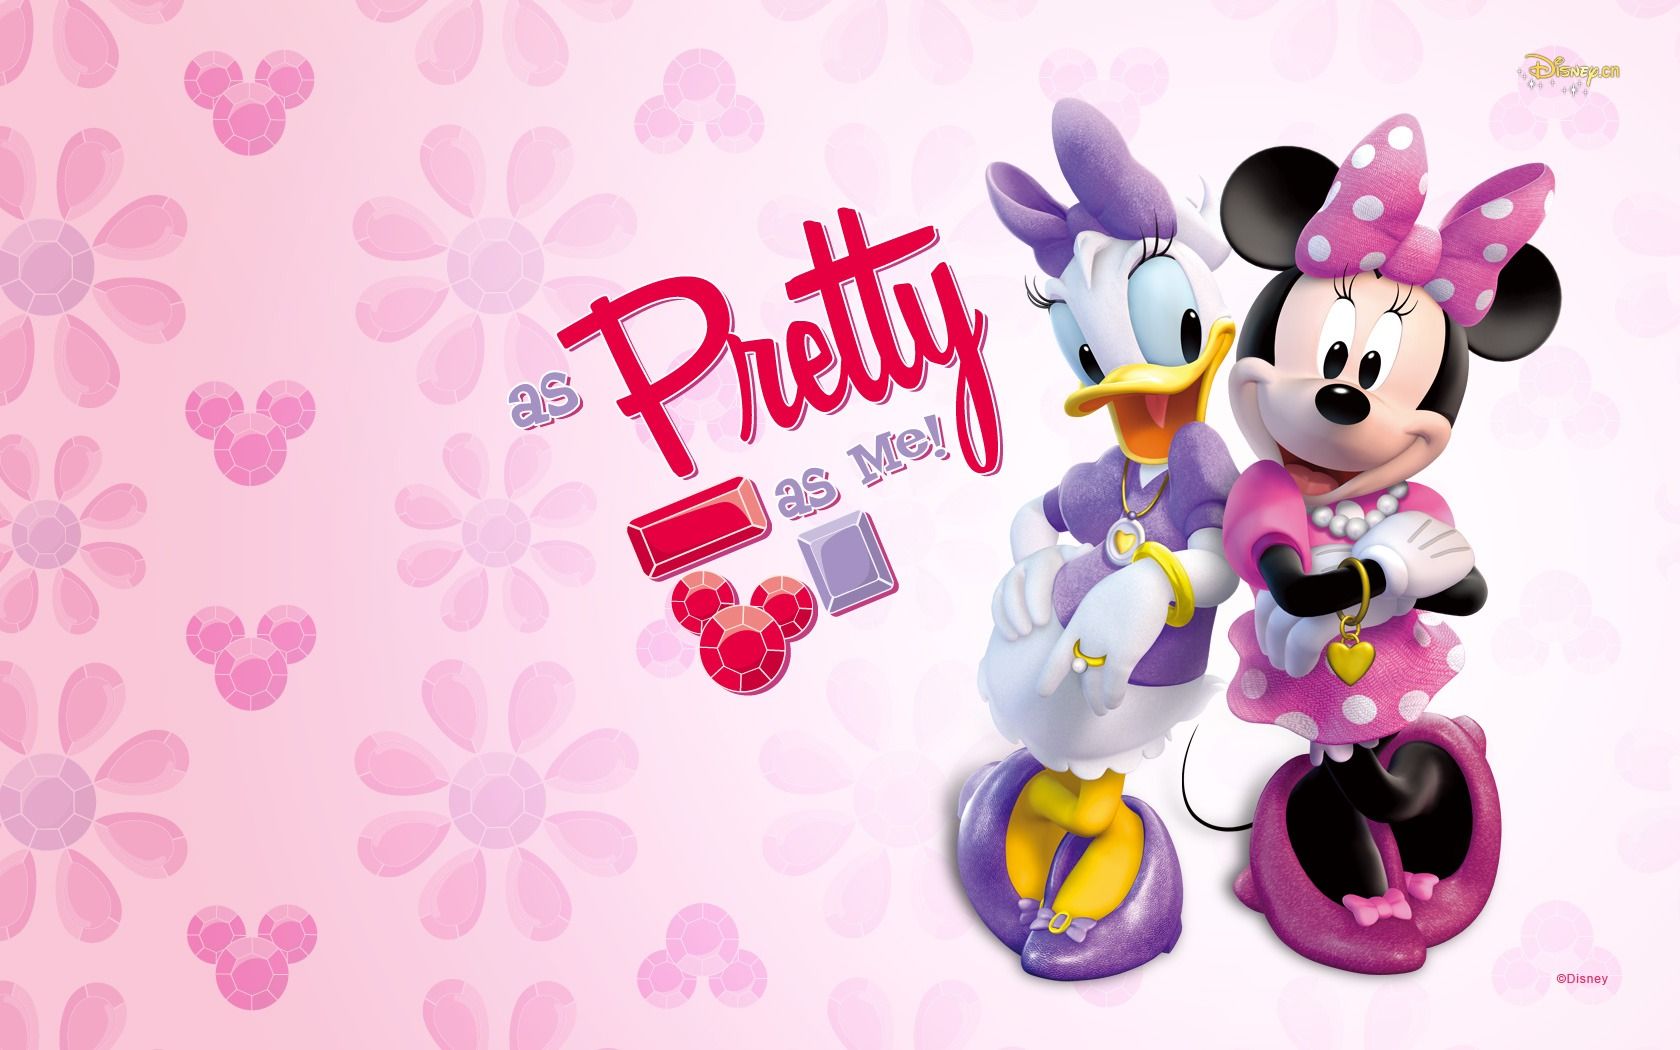 Dibujos animados de Minnie Mouse gratis, descargar imágenes prediseñadas gratis, imágenes prediseñadas gratis en